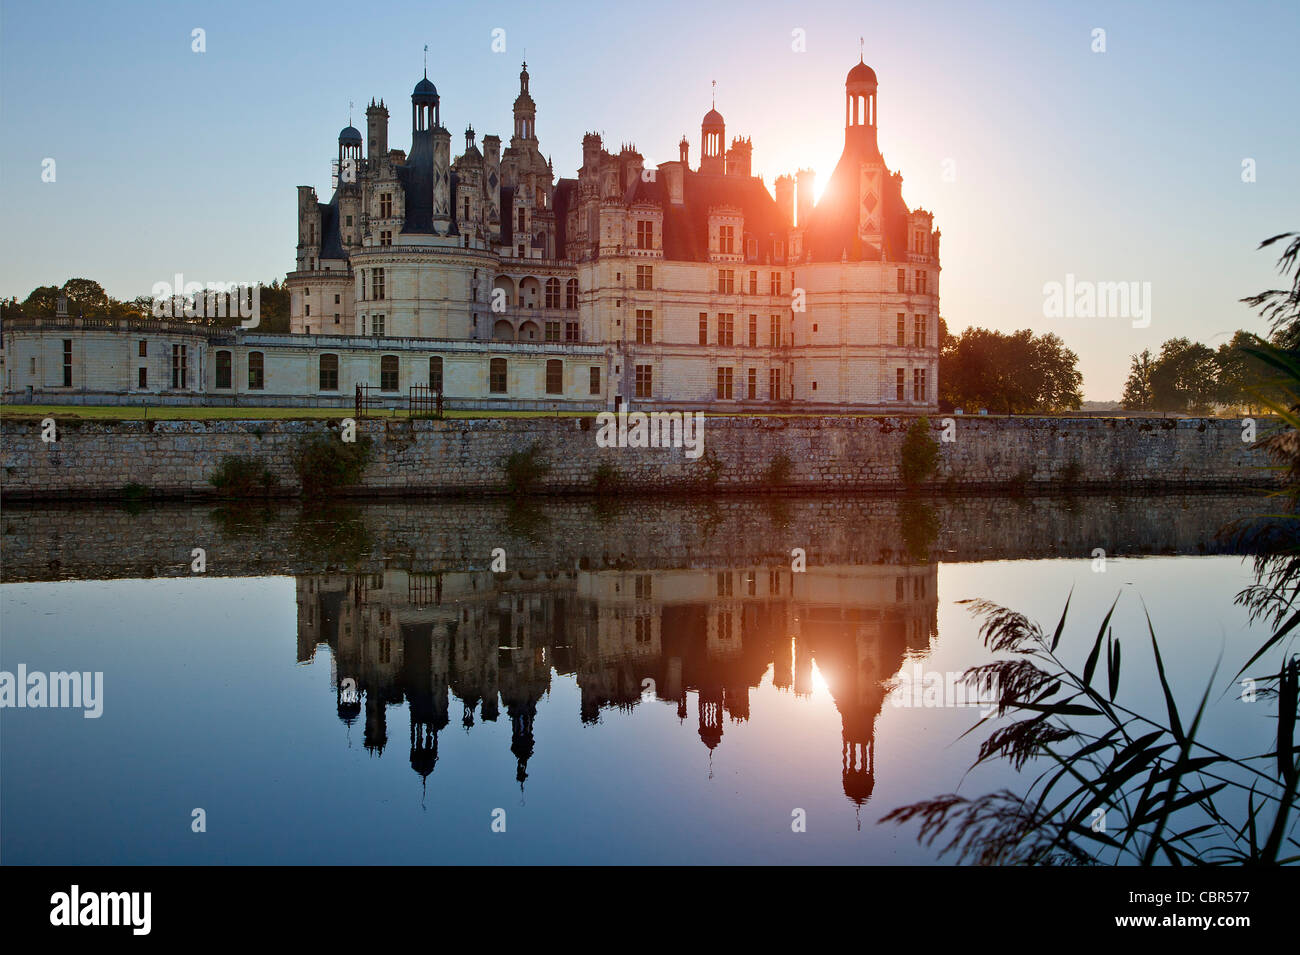 Vallée de la Loire, le château de Chambord Banque D'Images